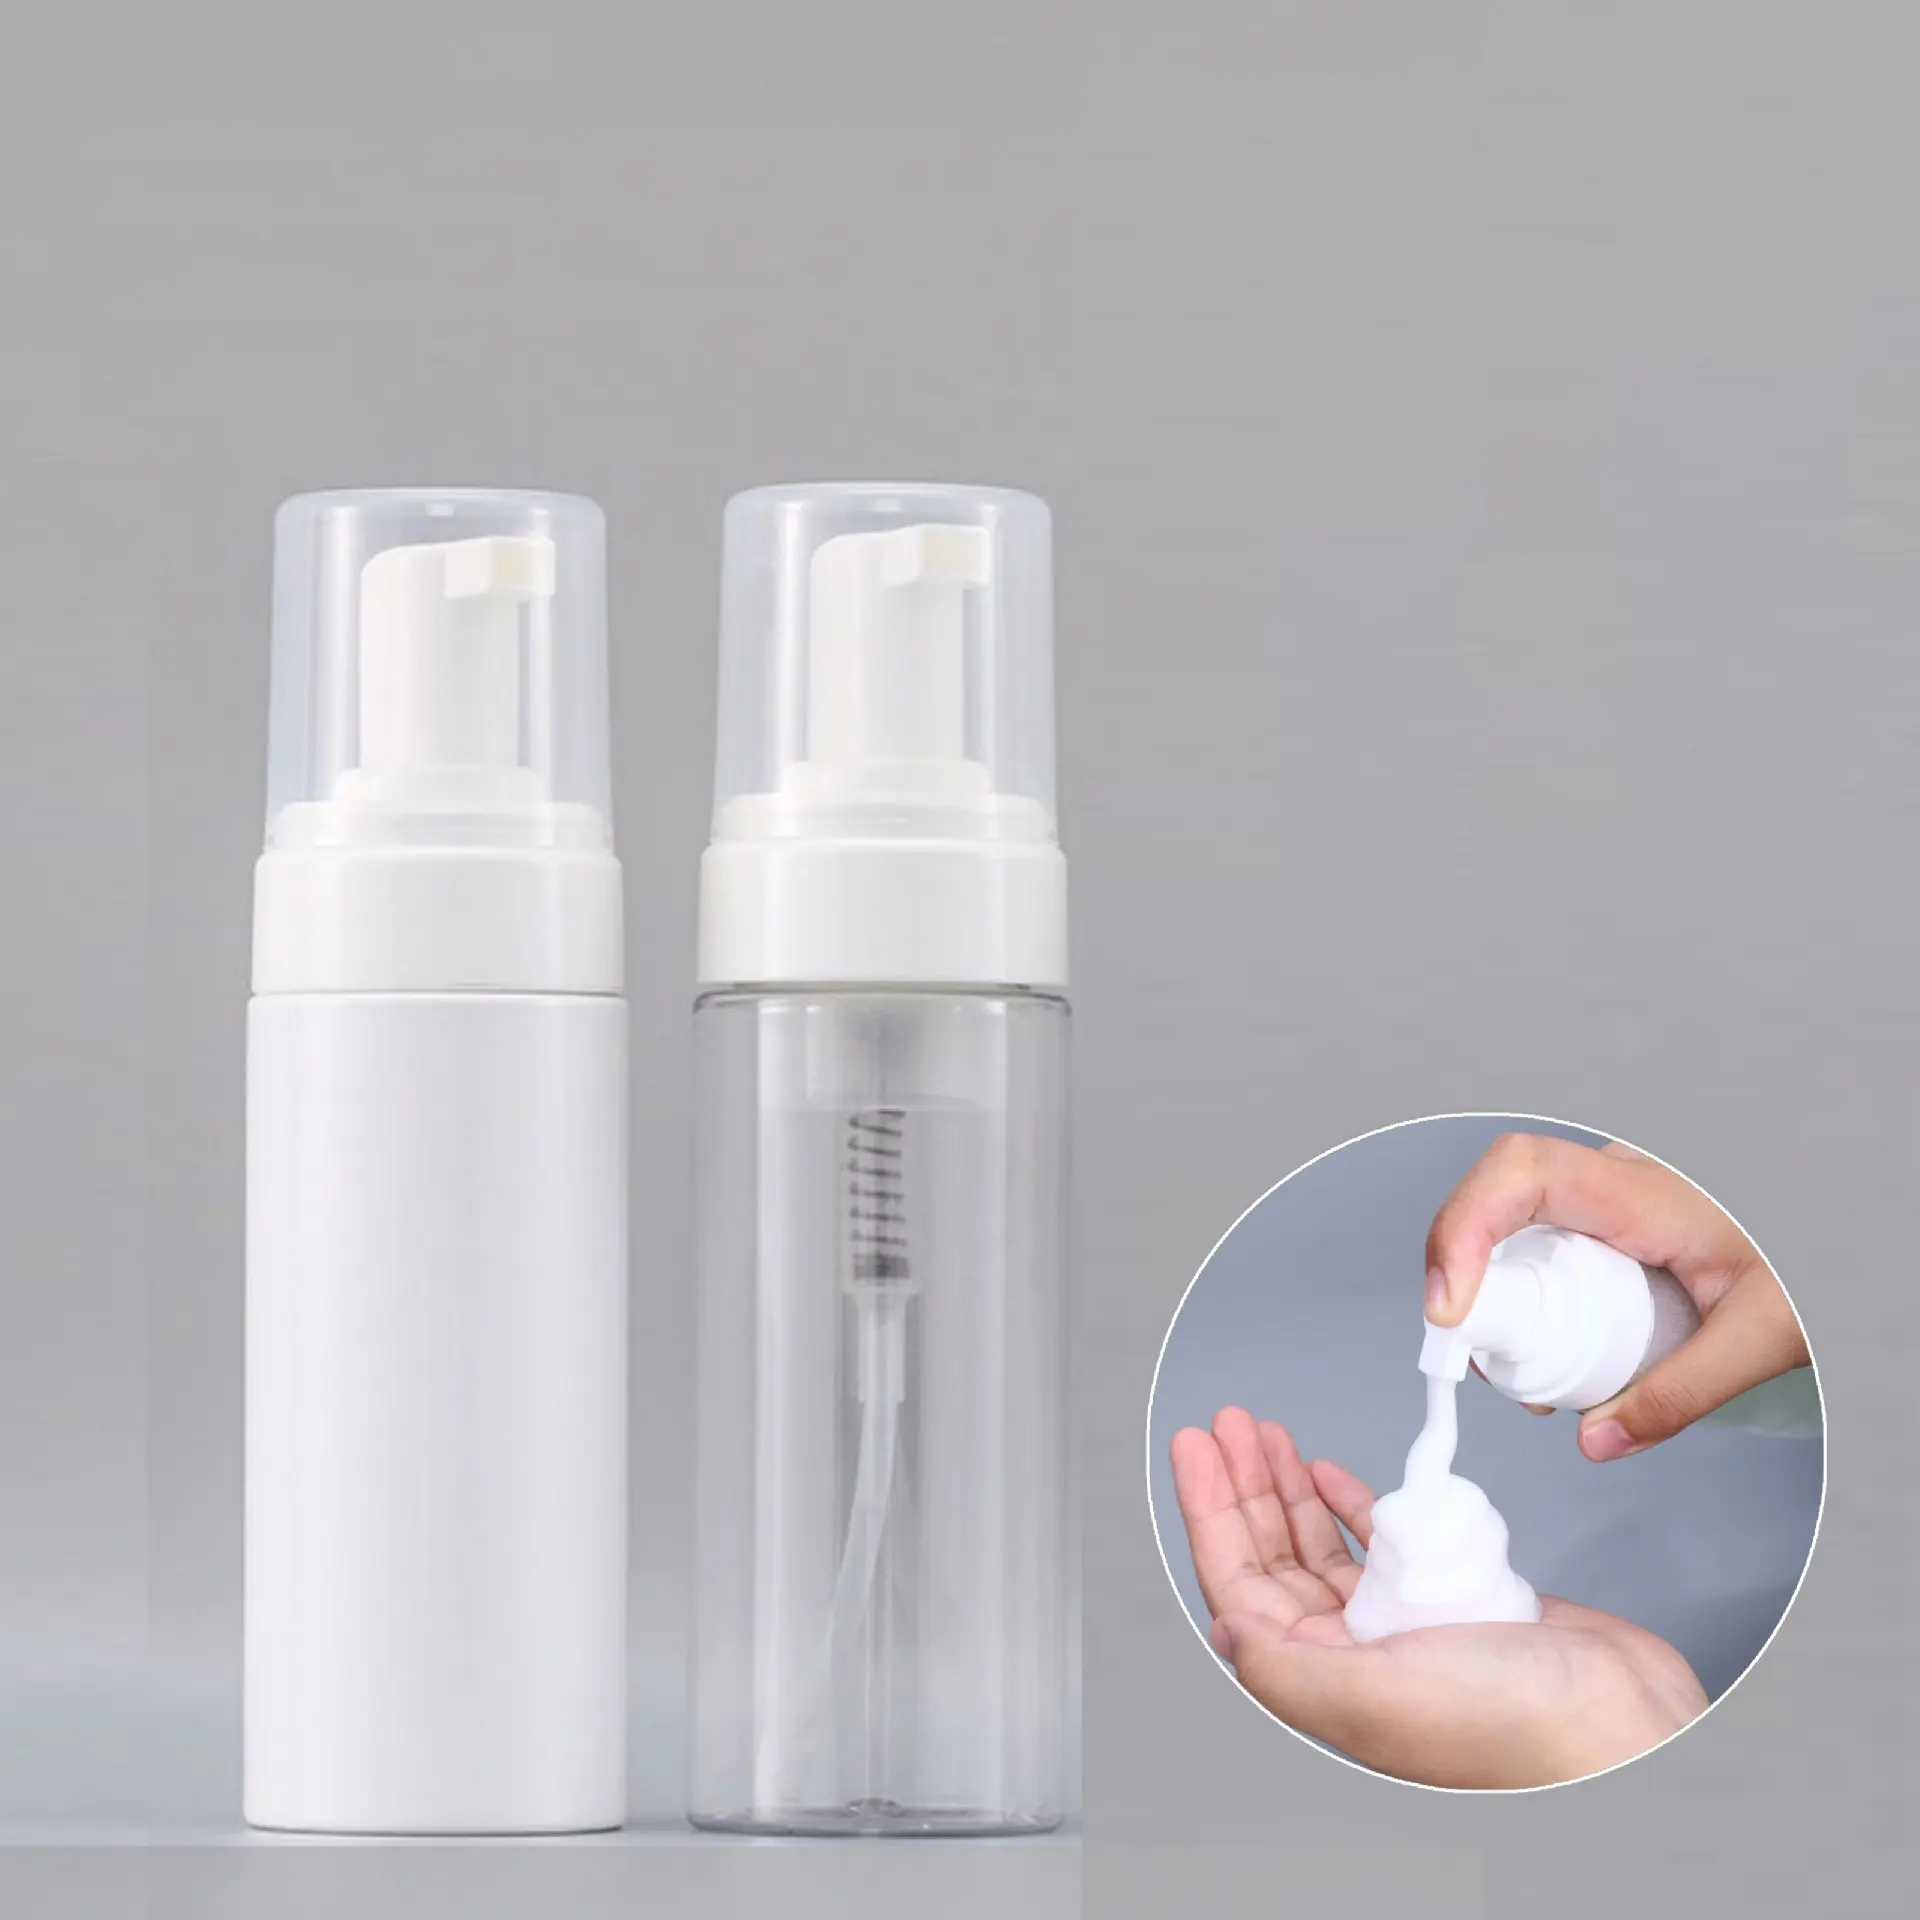 Garrafa de espuma para mousse de embalagens cosméticas, garrafa de espuma transparente para animais de estimação, garrafa de limpeza de espuma 150ml branco transparente